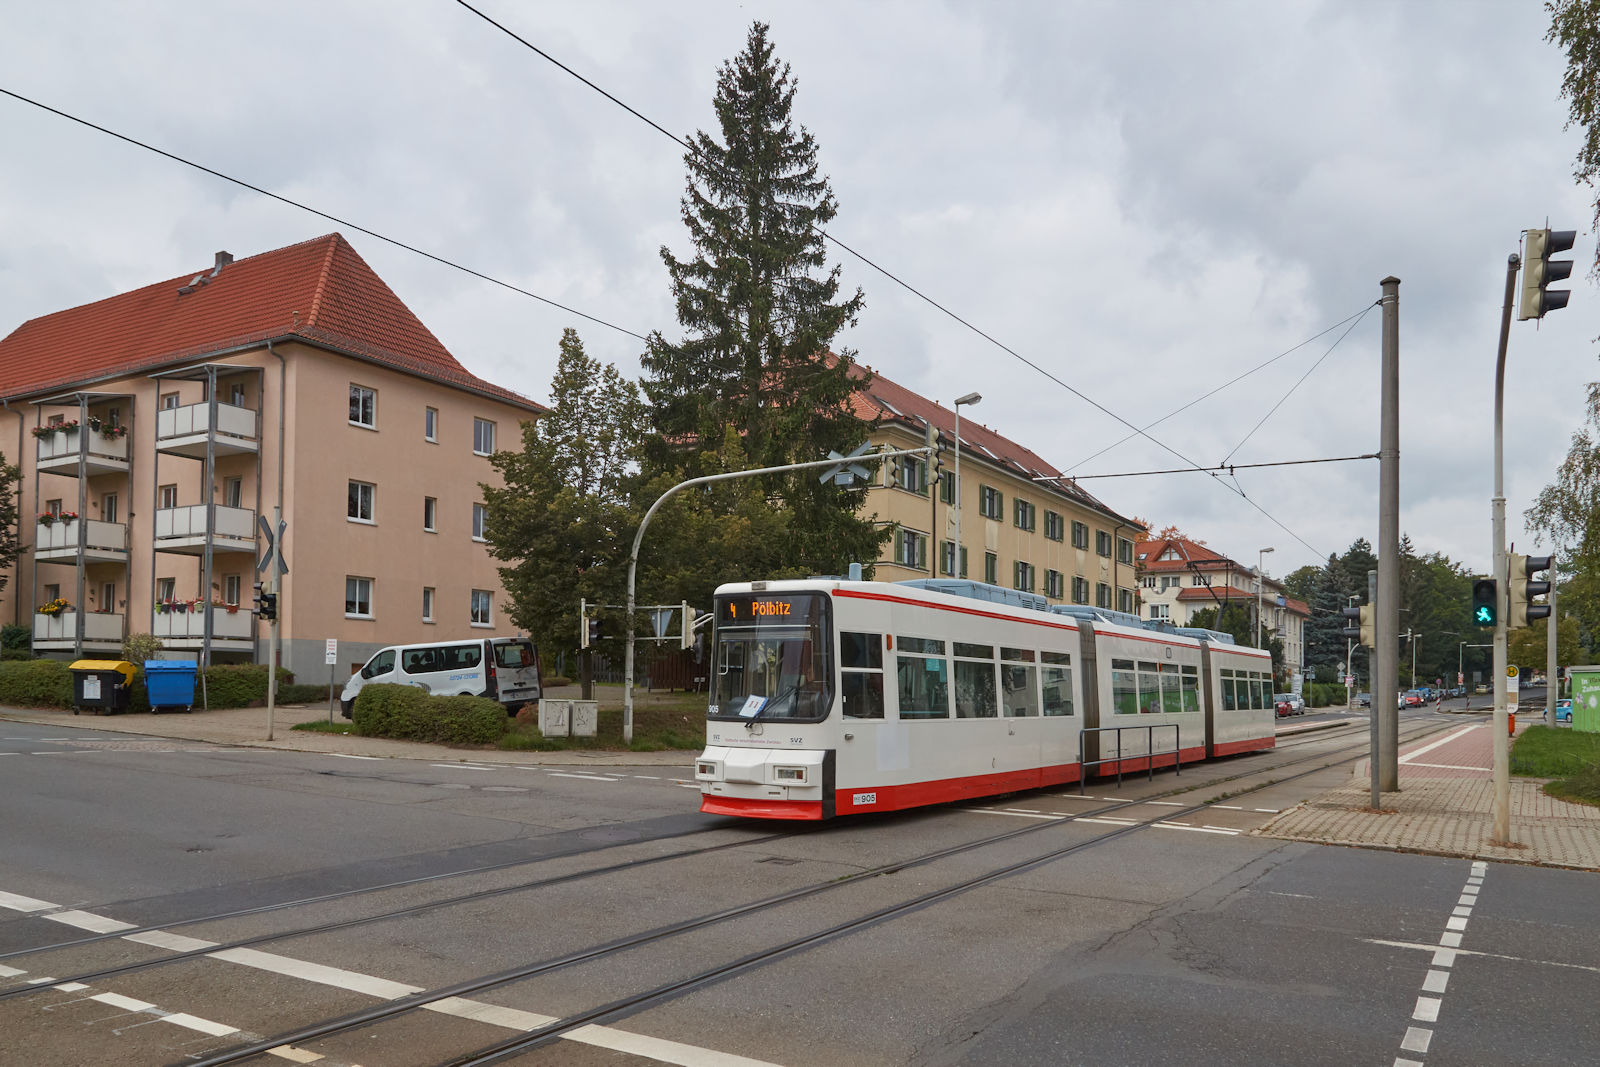 12 Gt6M wurden 1993 für die Zwickauer Straßenbahn beschafft. Am 20.09.2023 war Wagen 905 auf dem Weg vom Klinikum nach Pölbitz und hat gerade die Haltestelle Virchowplatz verlassen.